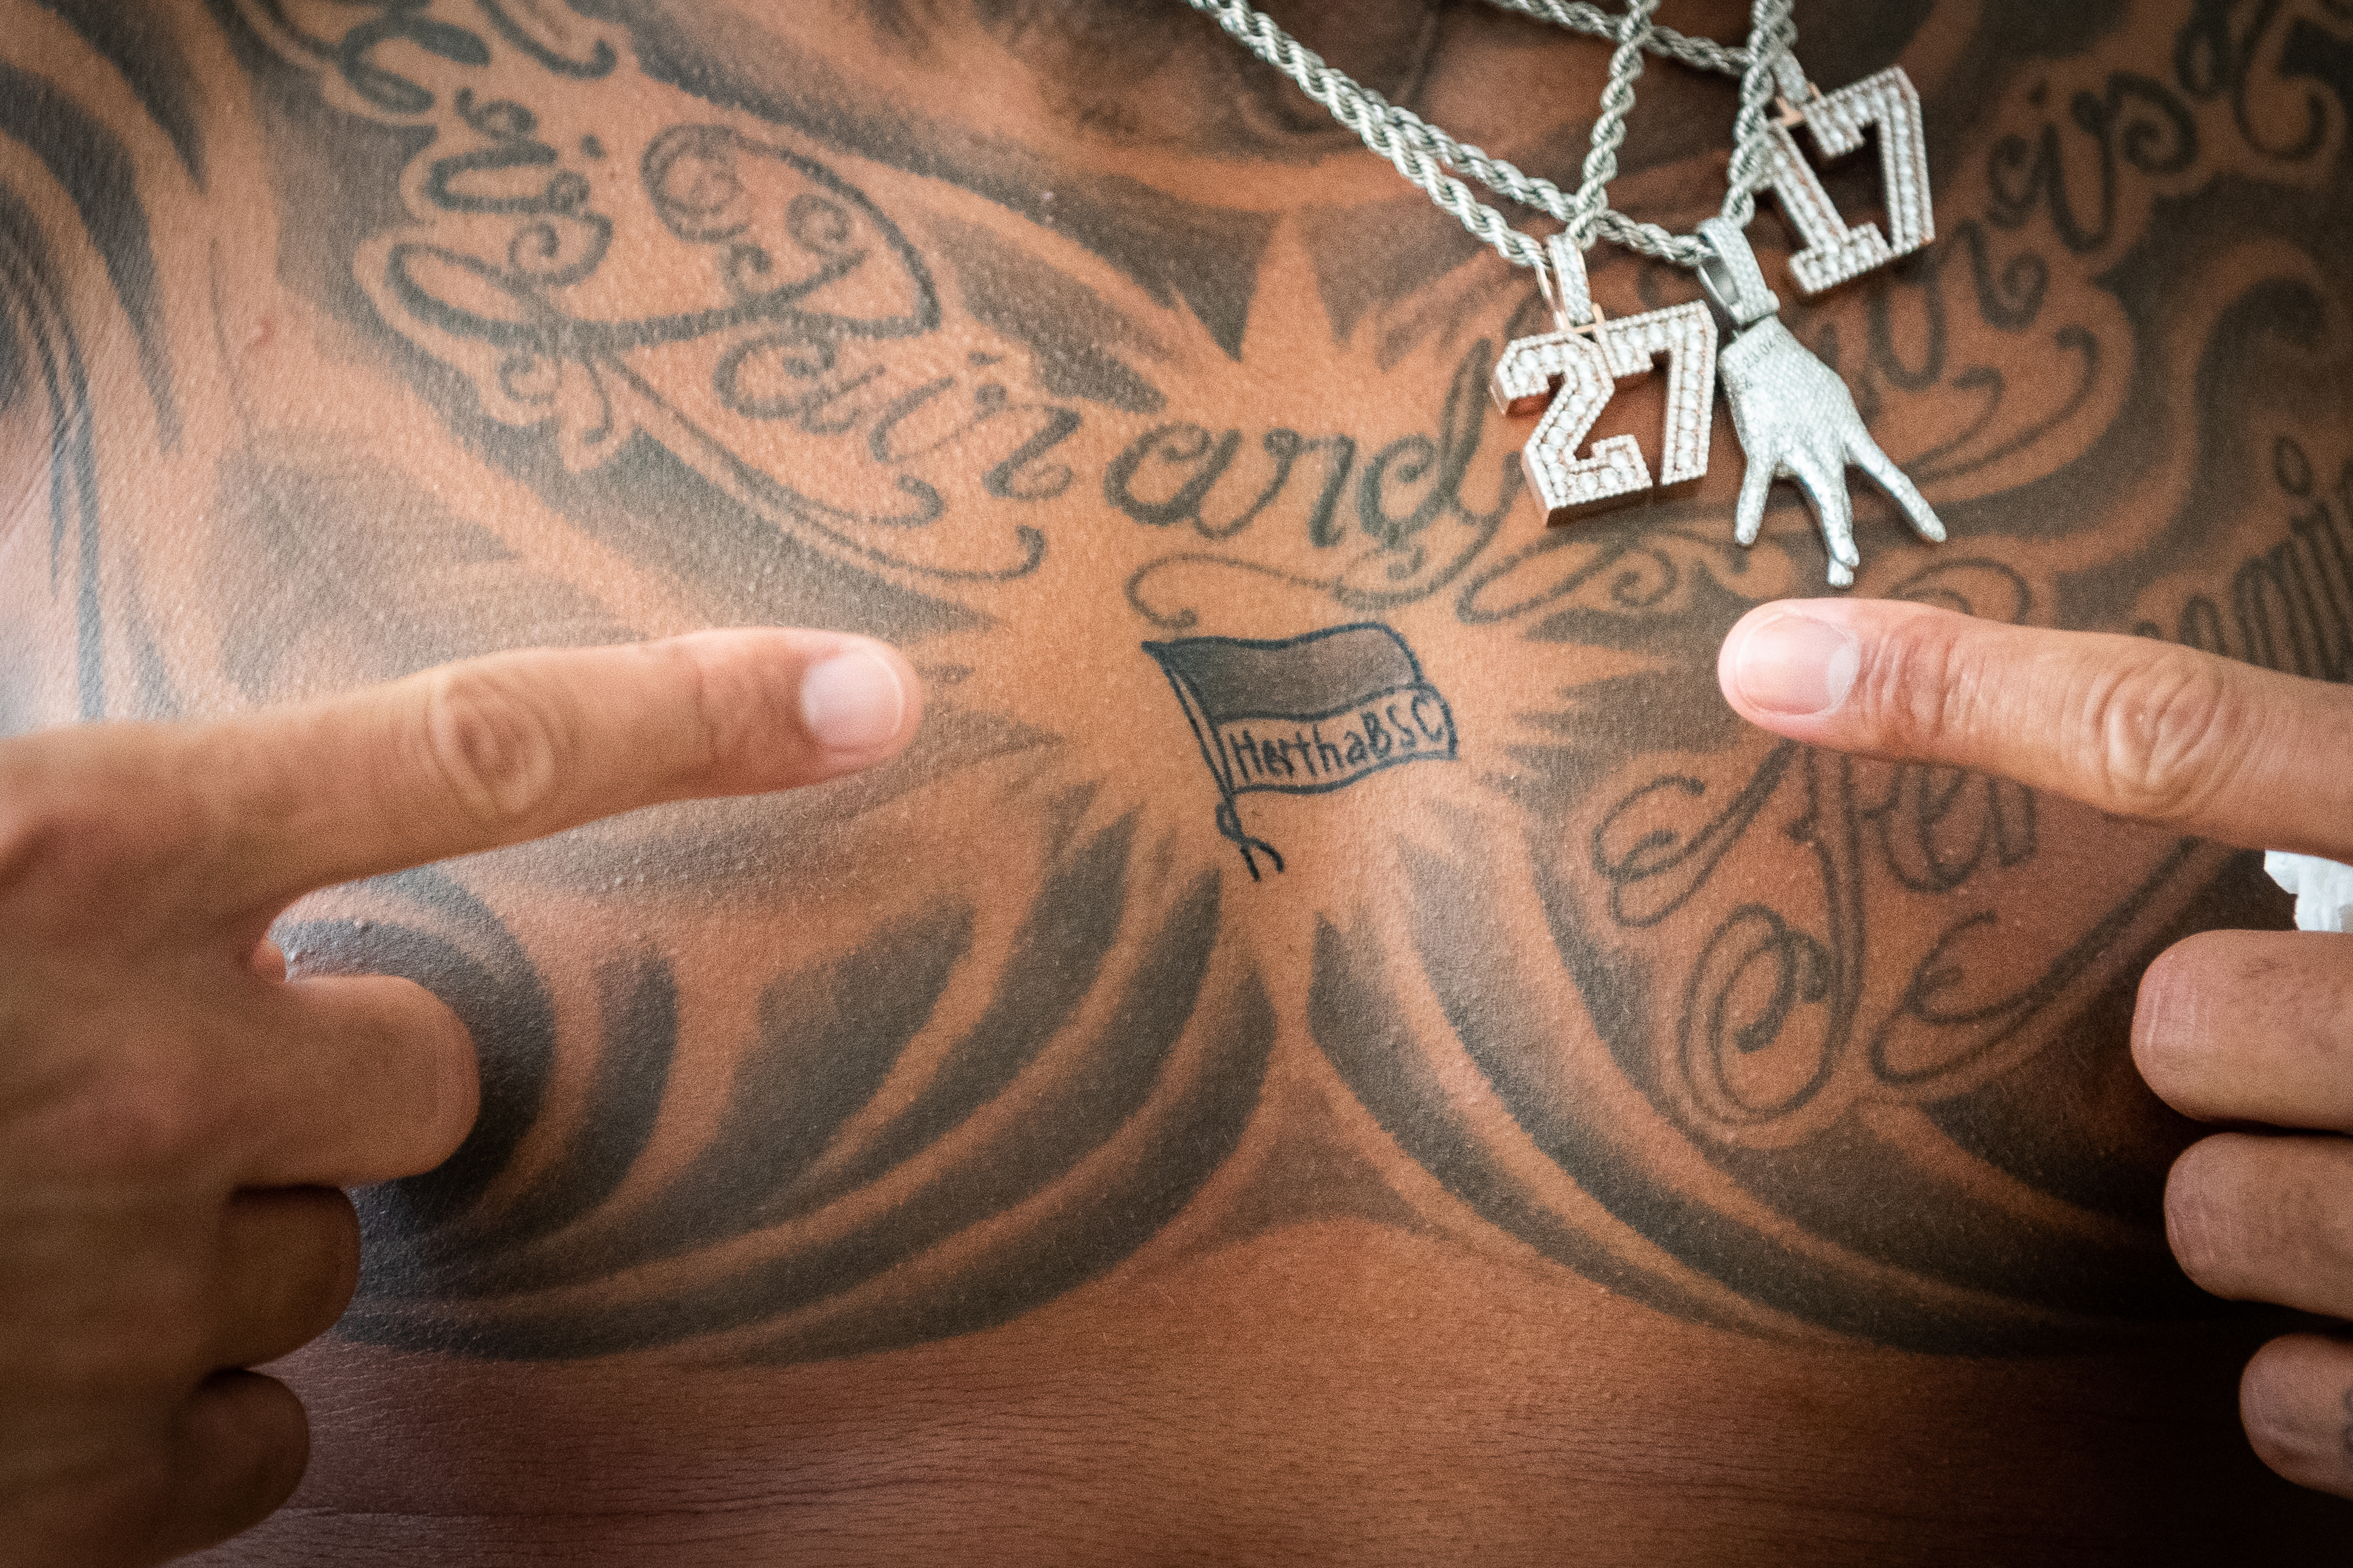 Prince Boateng zeigt auf sein Tattoo auf der Brust.